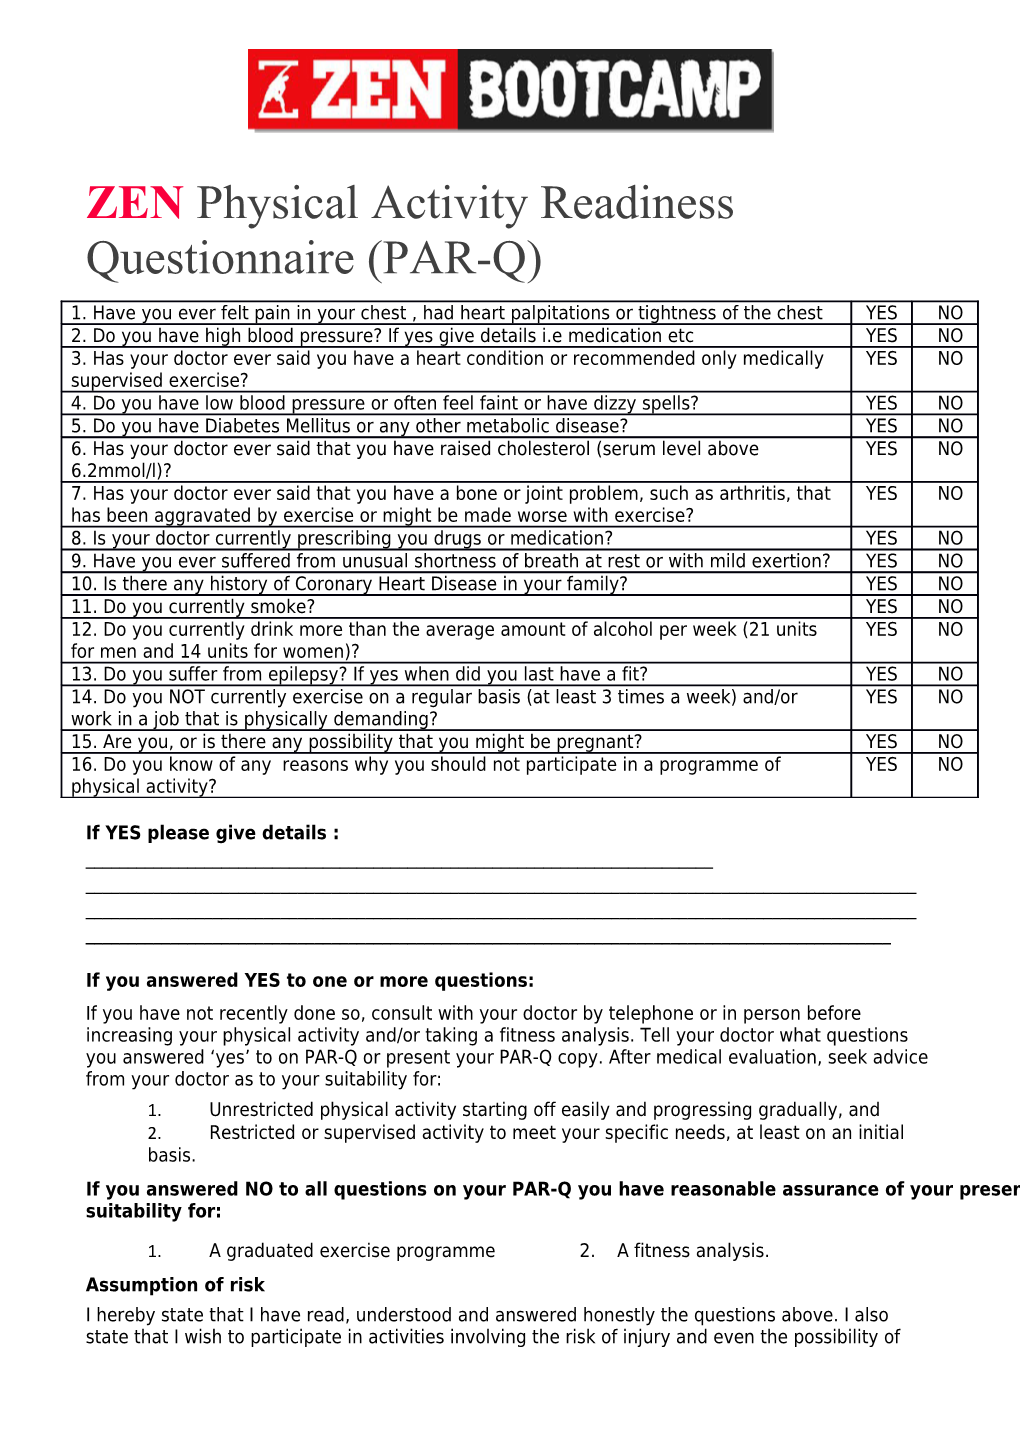 Zenphysical Activity Readiness Questionnaire (PAR-Q)